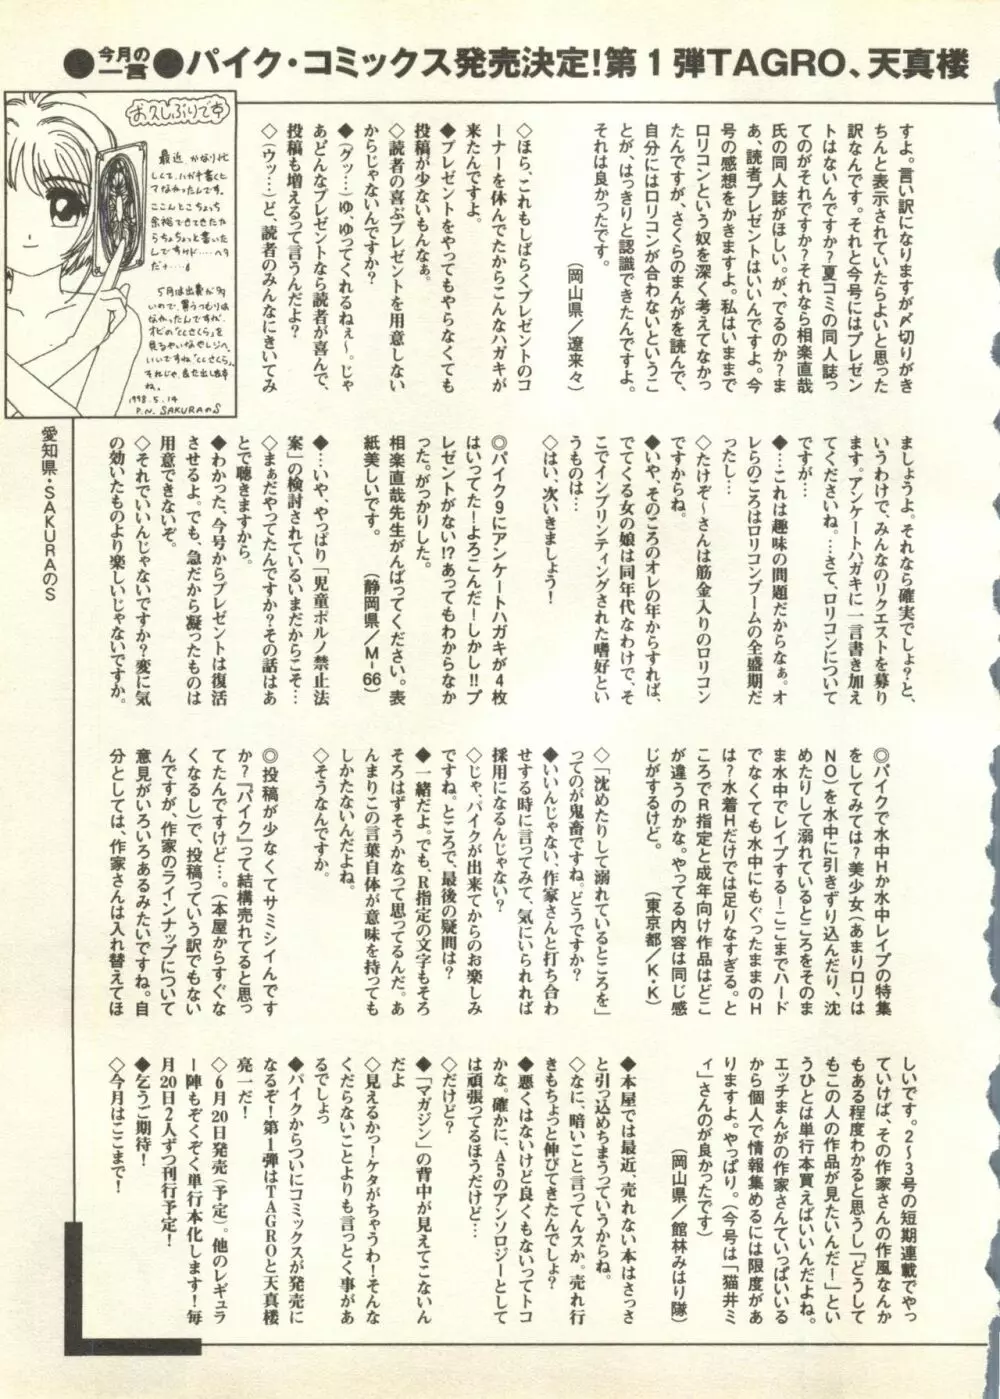 パイク Pai.kuu 1998 July vol.11 文月 258ページ